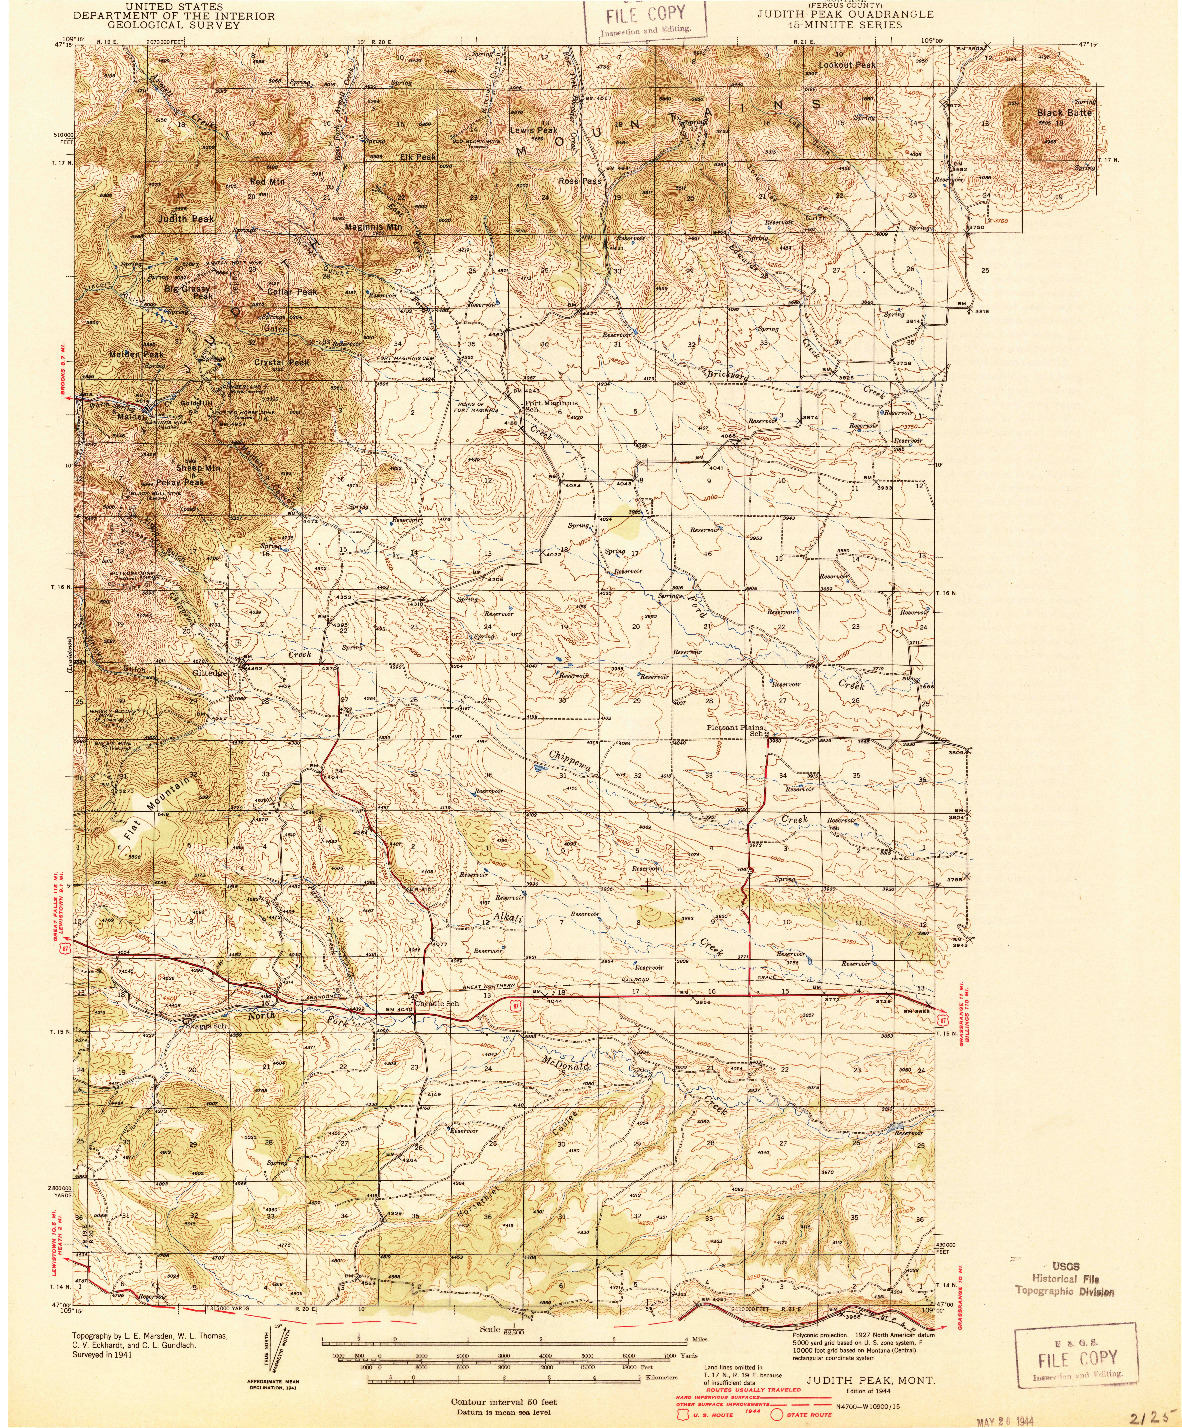 USGS 1:62500-SCALE QUADRANGLE FOR JUDITH PEAK, MT 1944